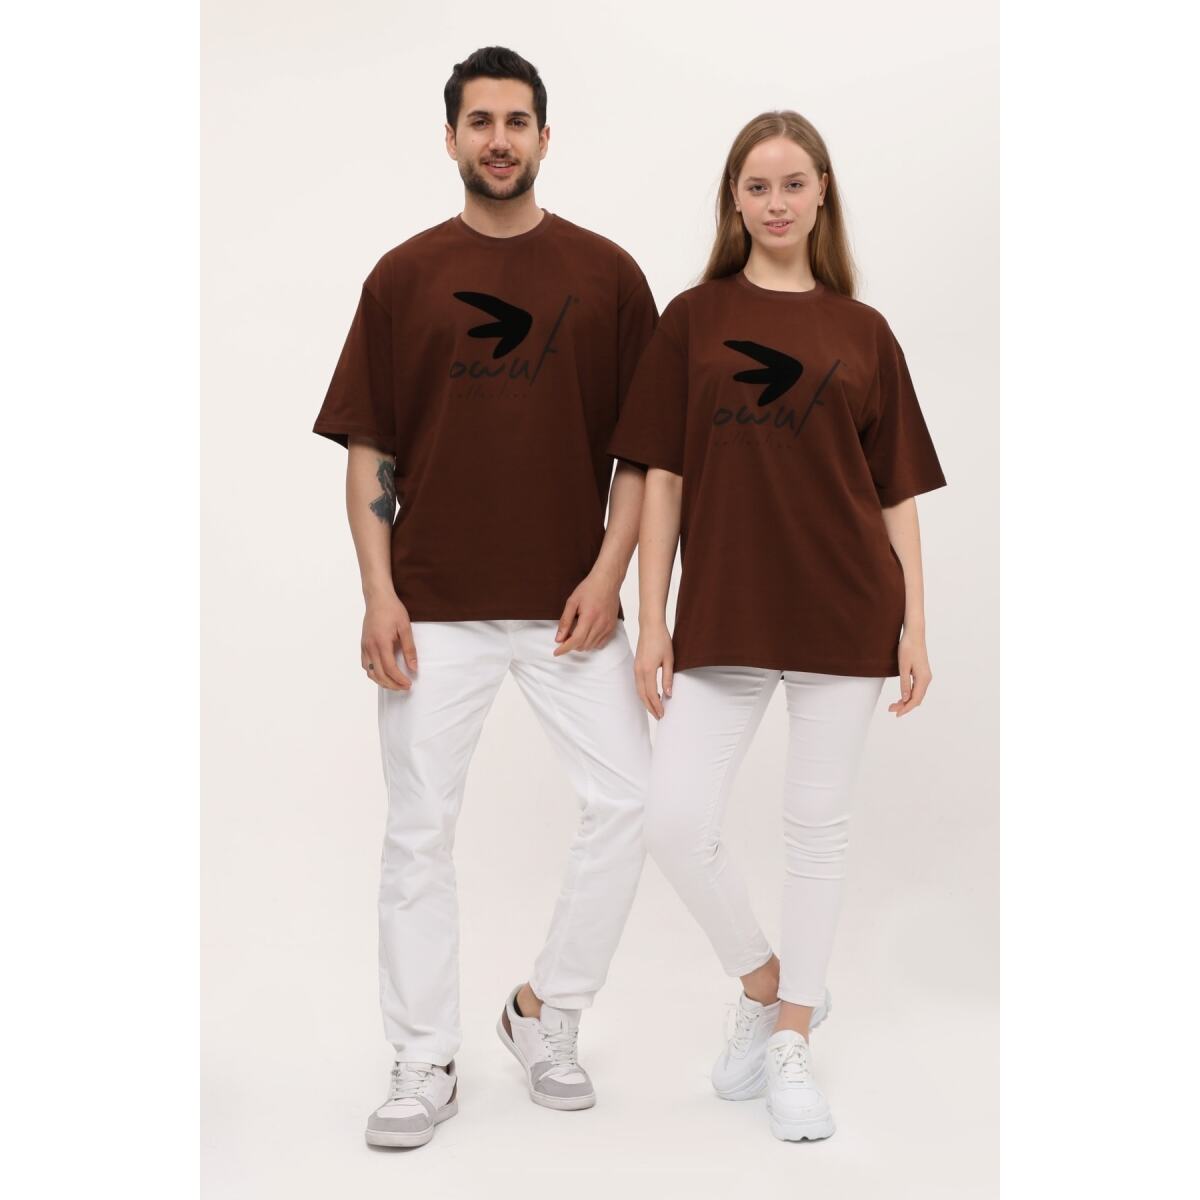 Sevgili Çift Kombinleri Flok Baskı Detaylı 2 Li Ürün T-Shirt